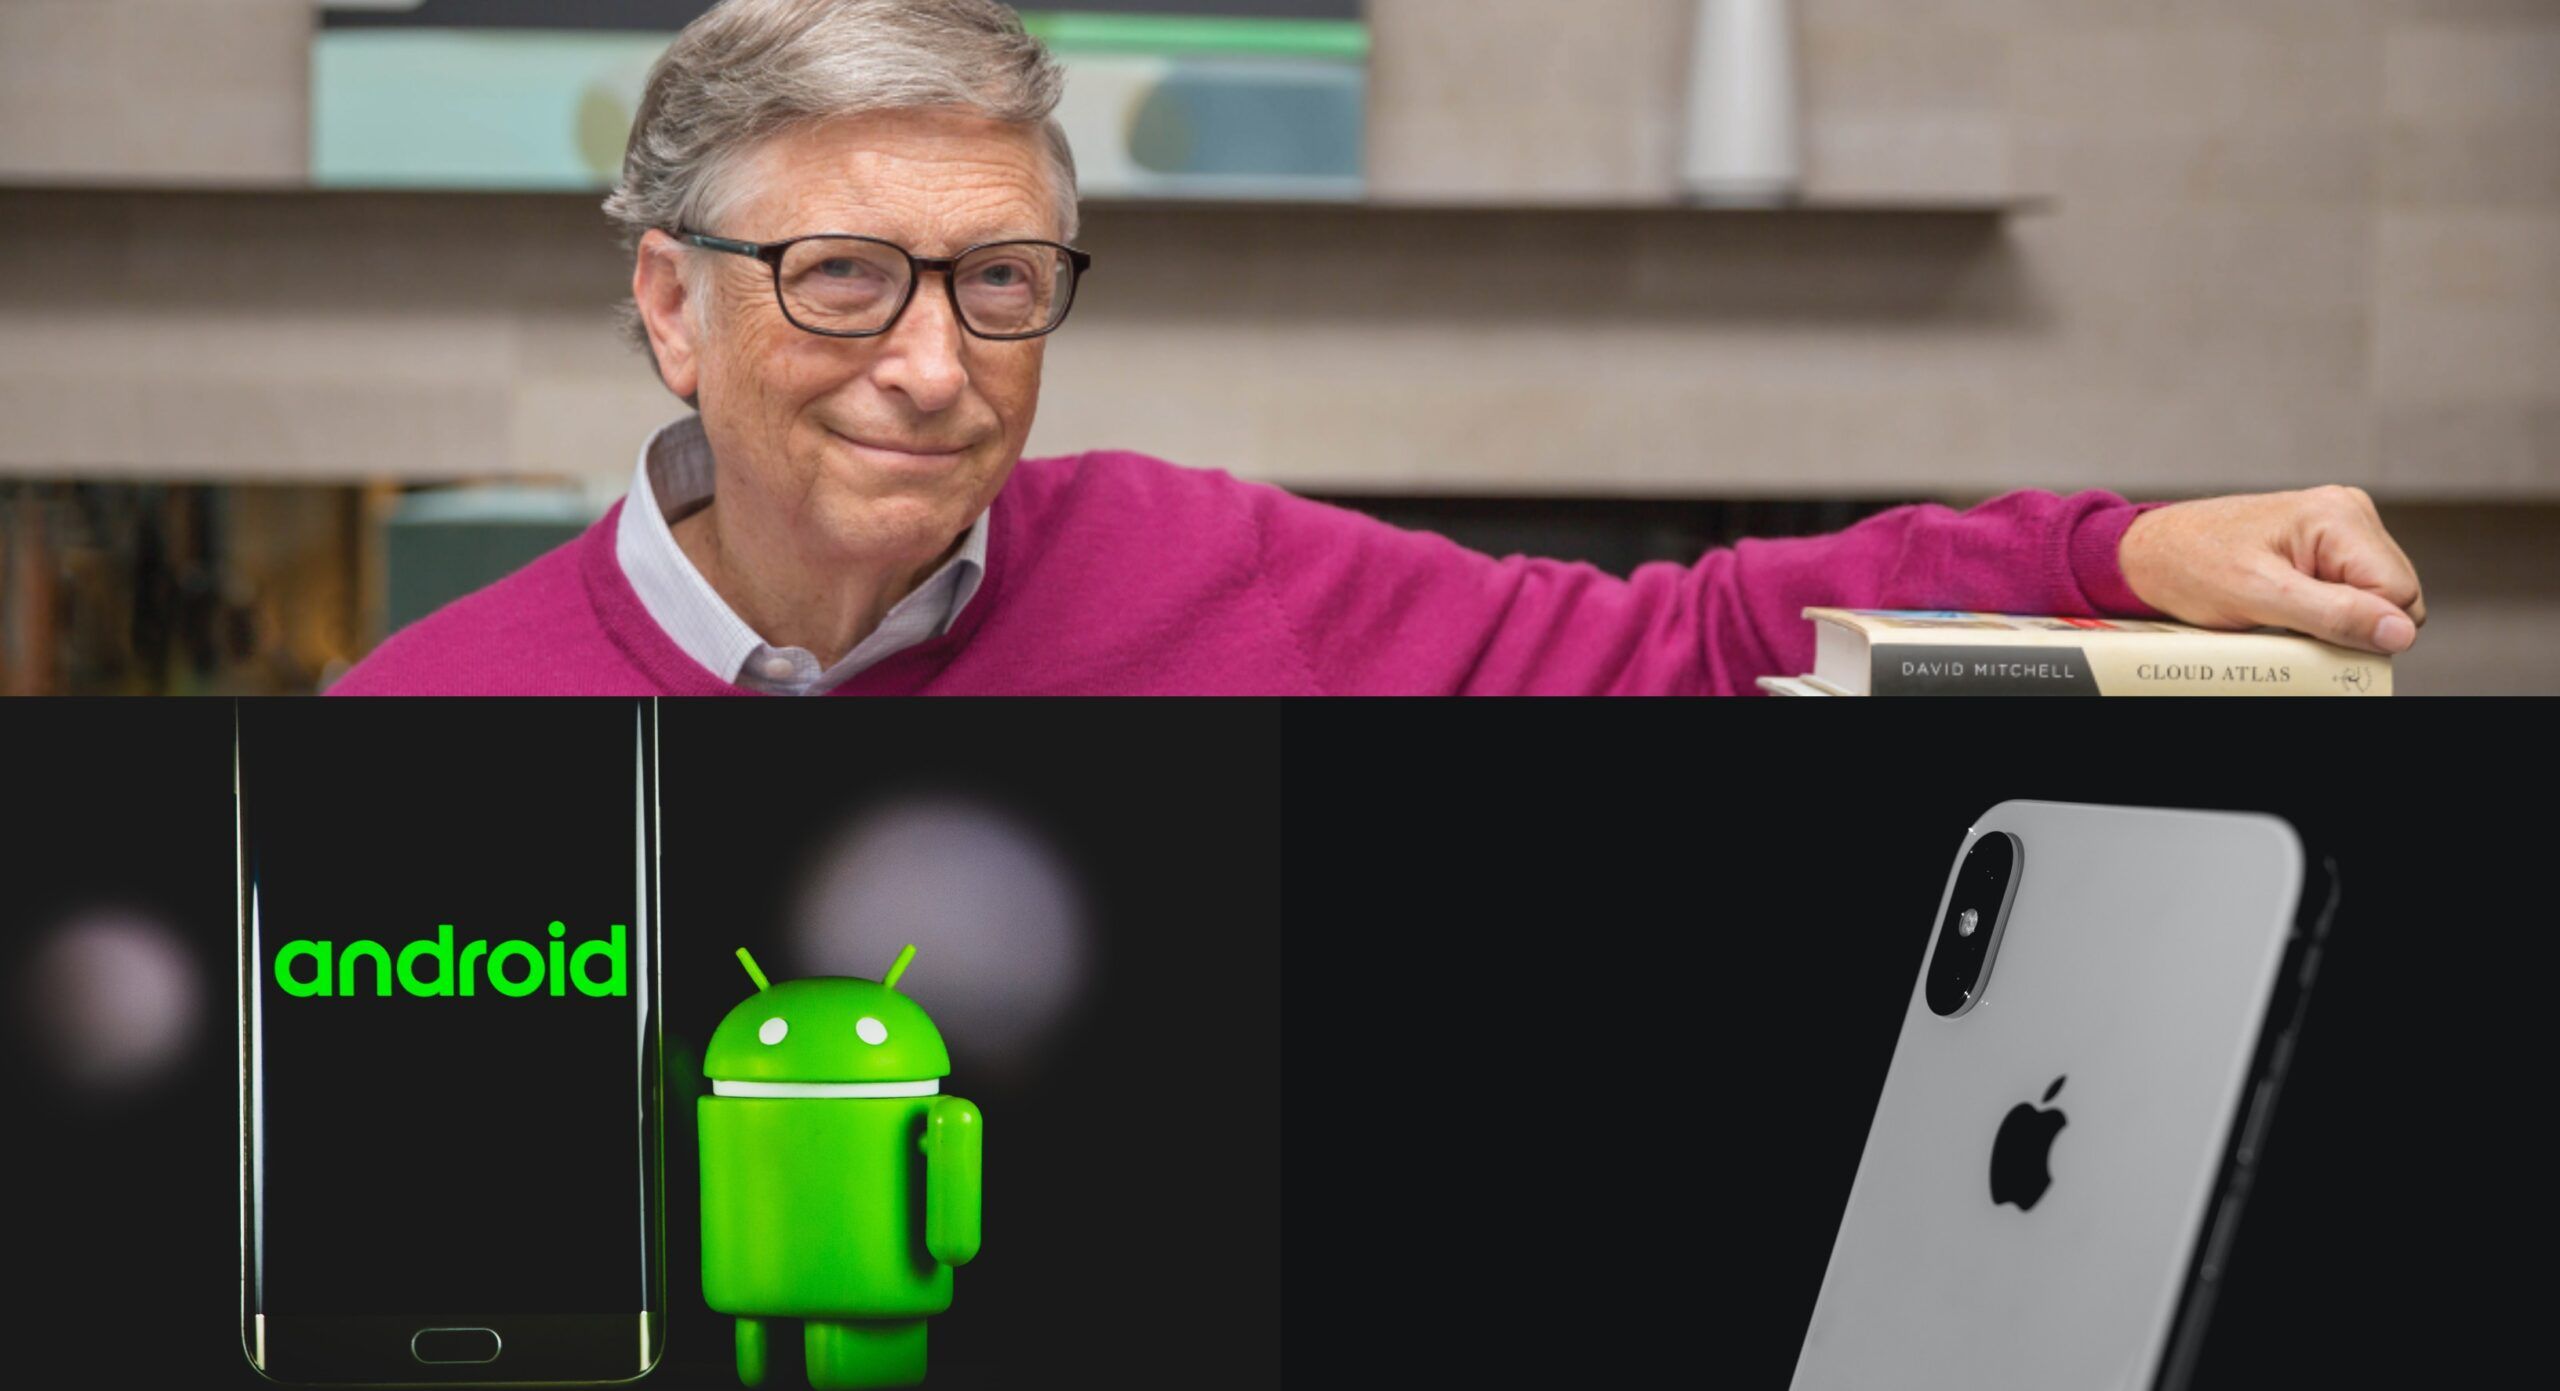 Sistemas de pago similares a Apple Pay llegarán a todos los smartphones: Bill Gates